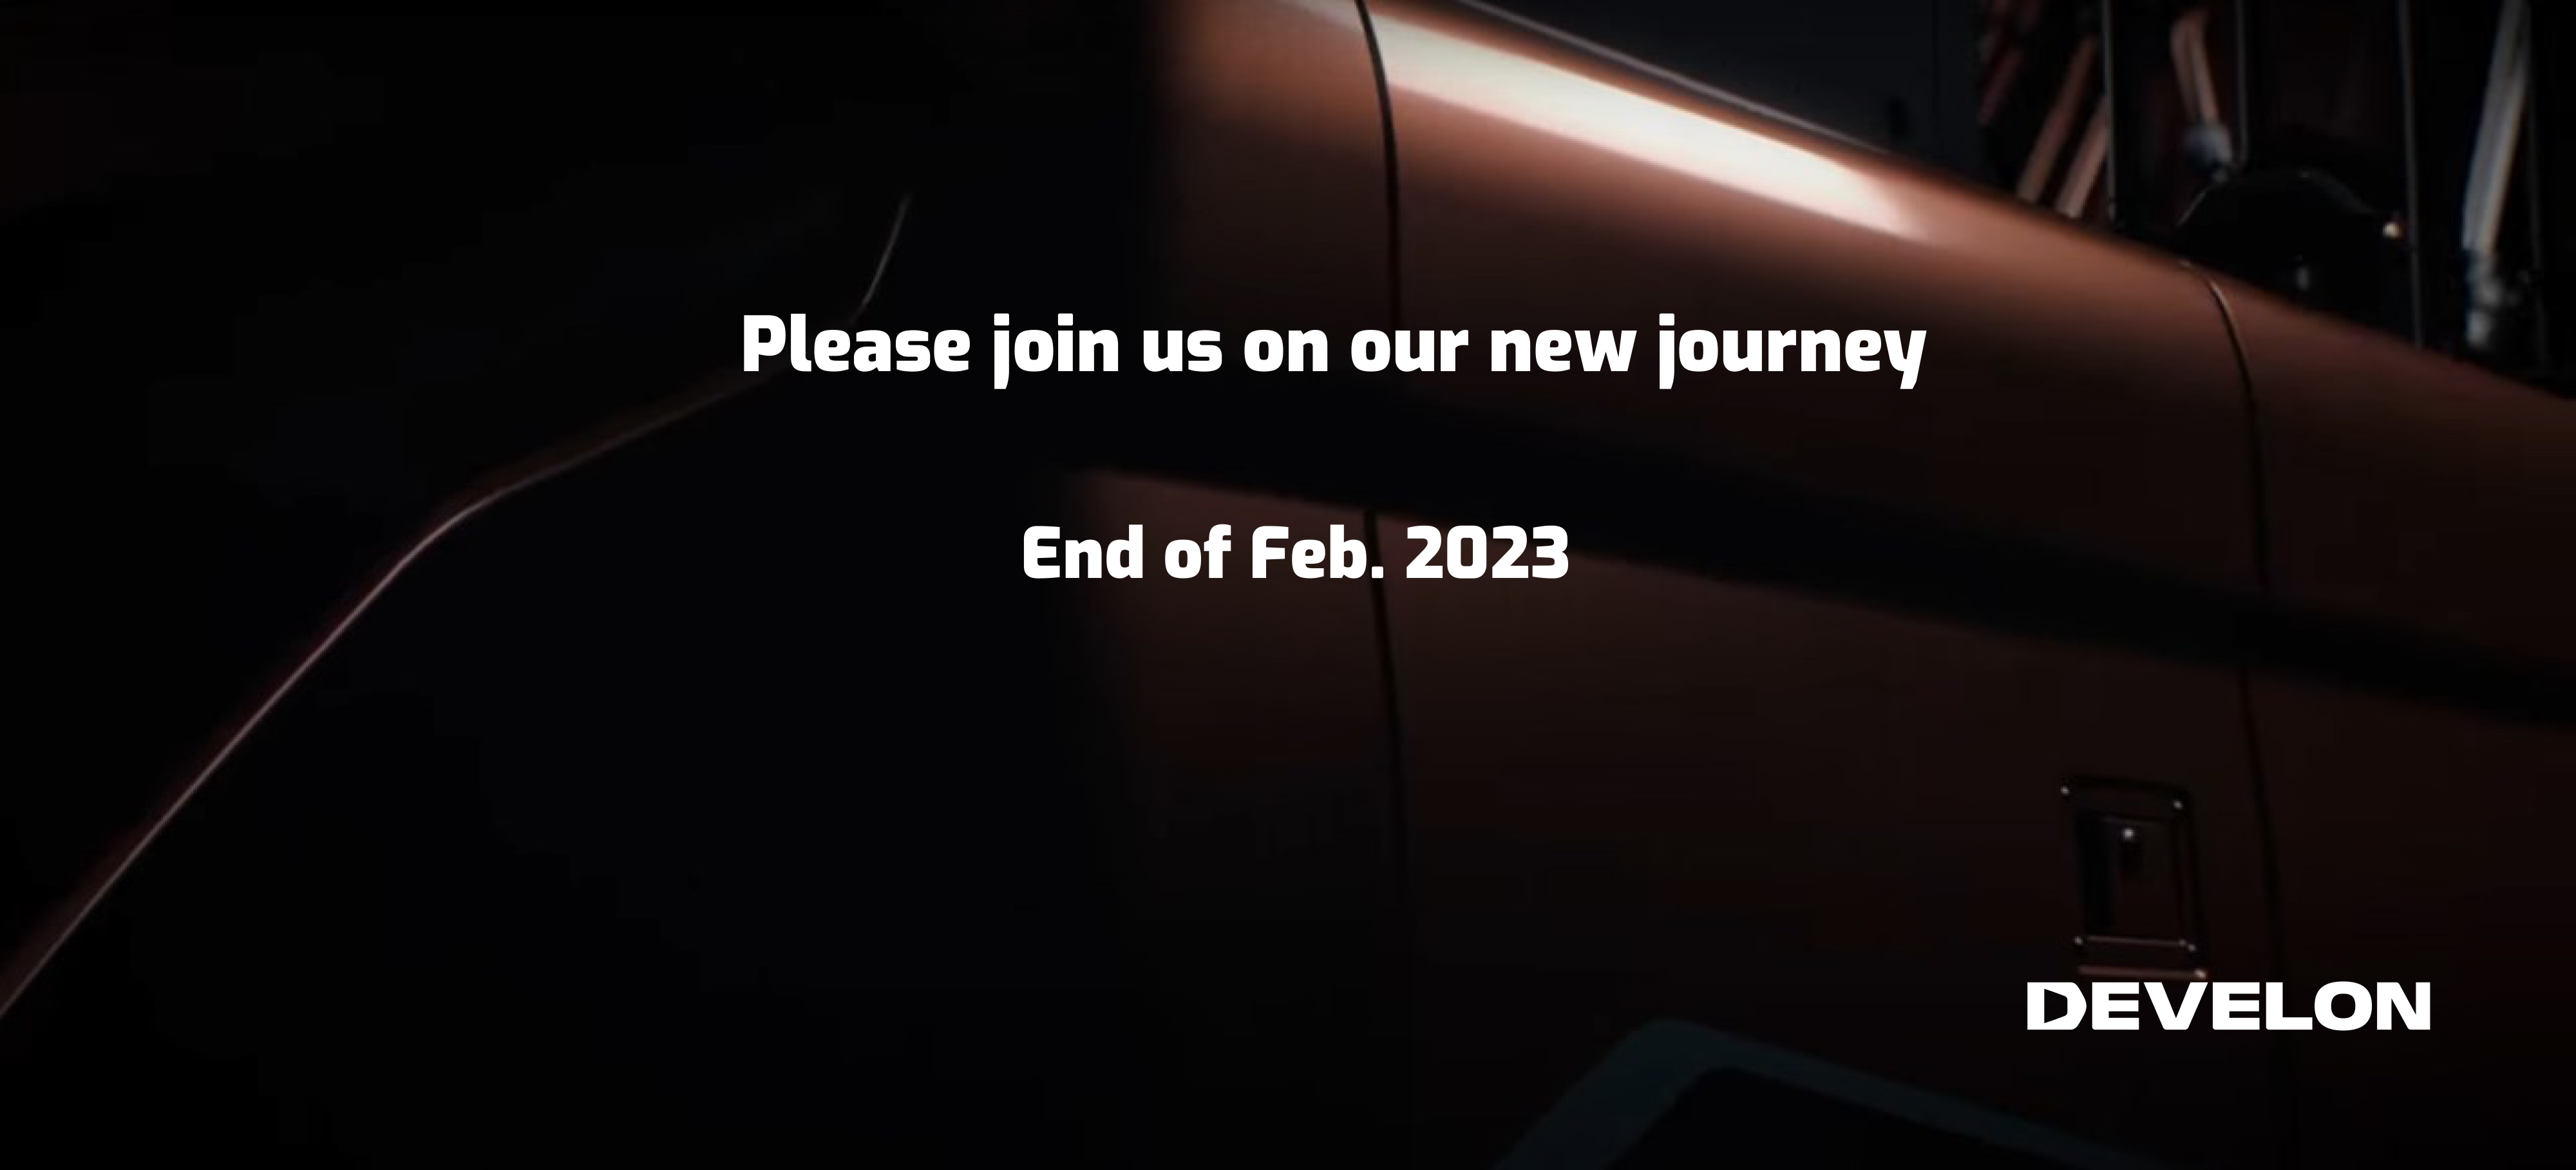 Ảnh chụp cận cảnh cực ấn tượng về thiết bị màu cam với dòng chữ: Vui lòng tham gia cùng chúng tôi trên hành trình mới. Cuối tháng 2 năm 2023. Logo PHÁT TRIỂN.